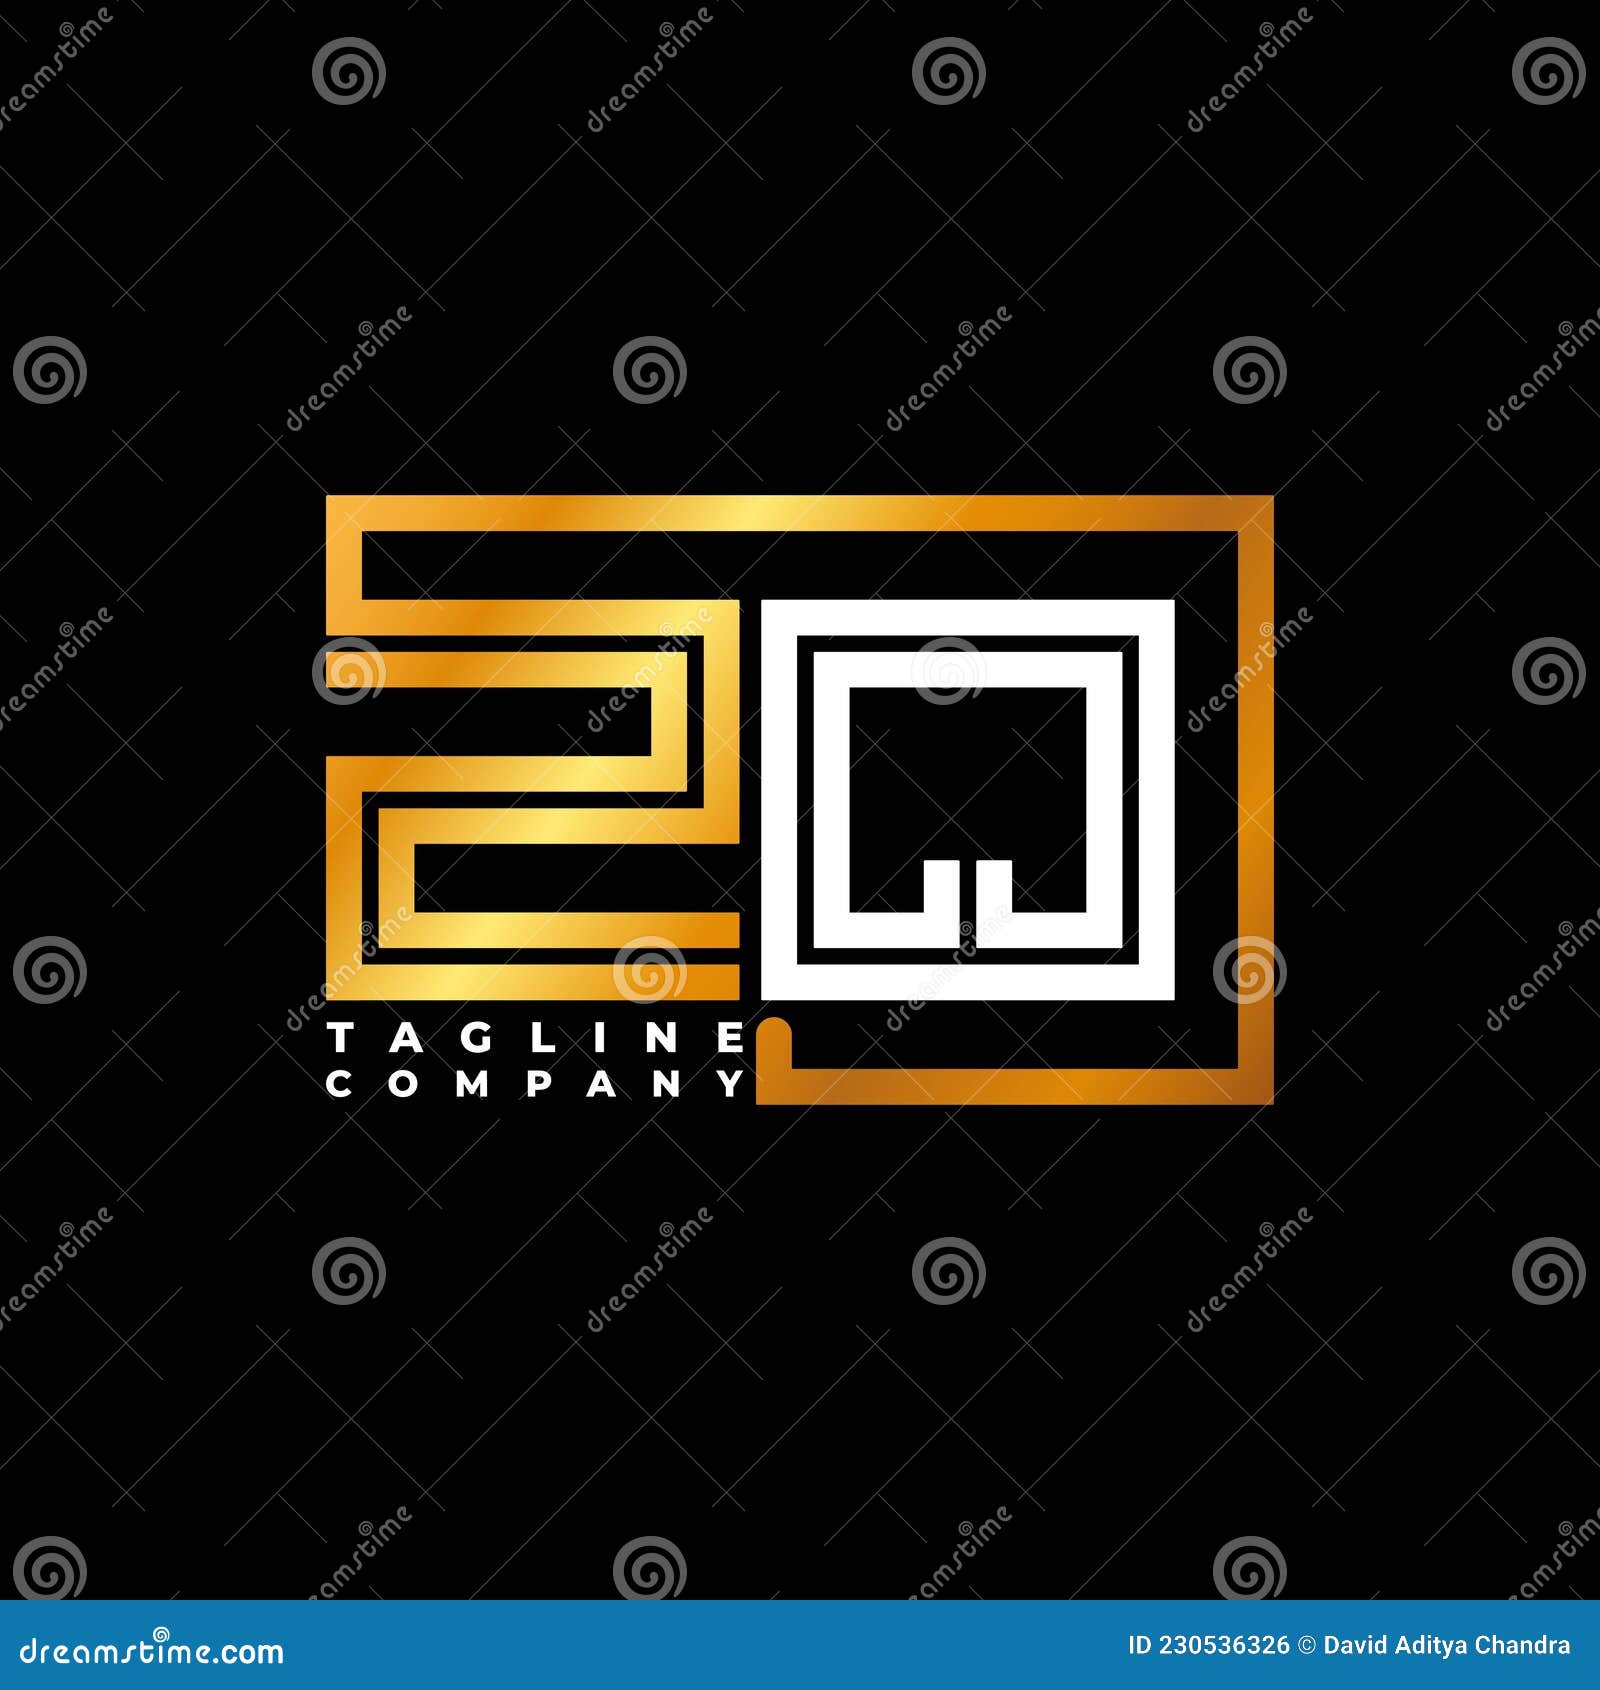 Zq Letter Golden Shape Line Vector Stock Vector Illustration Of